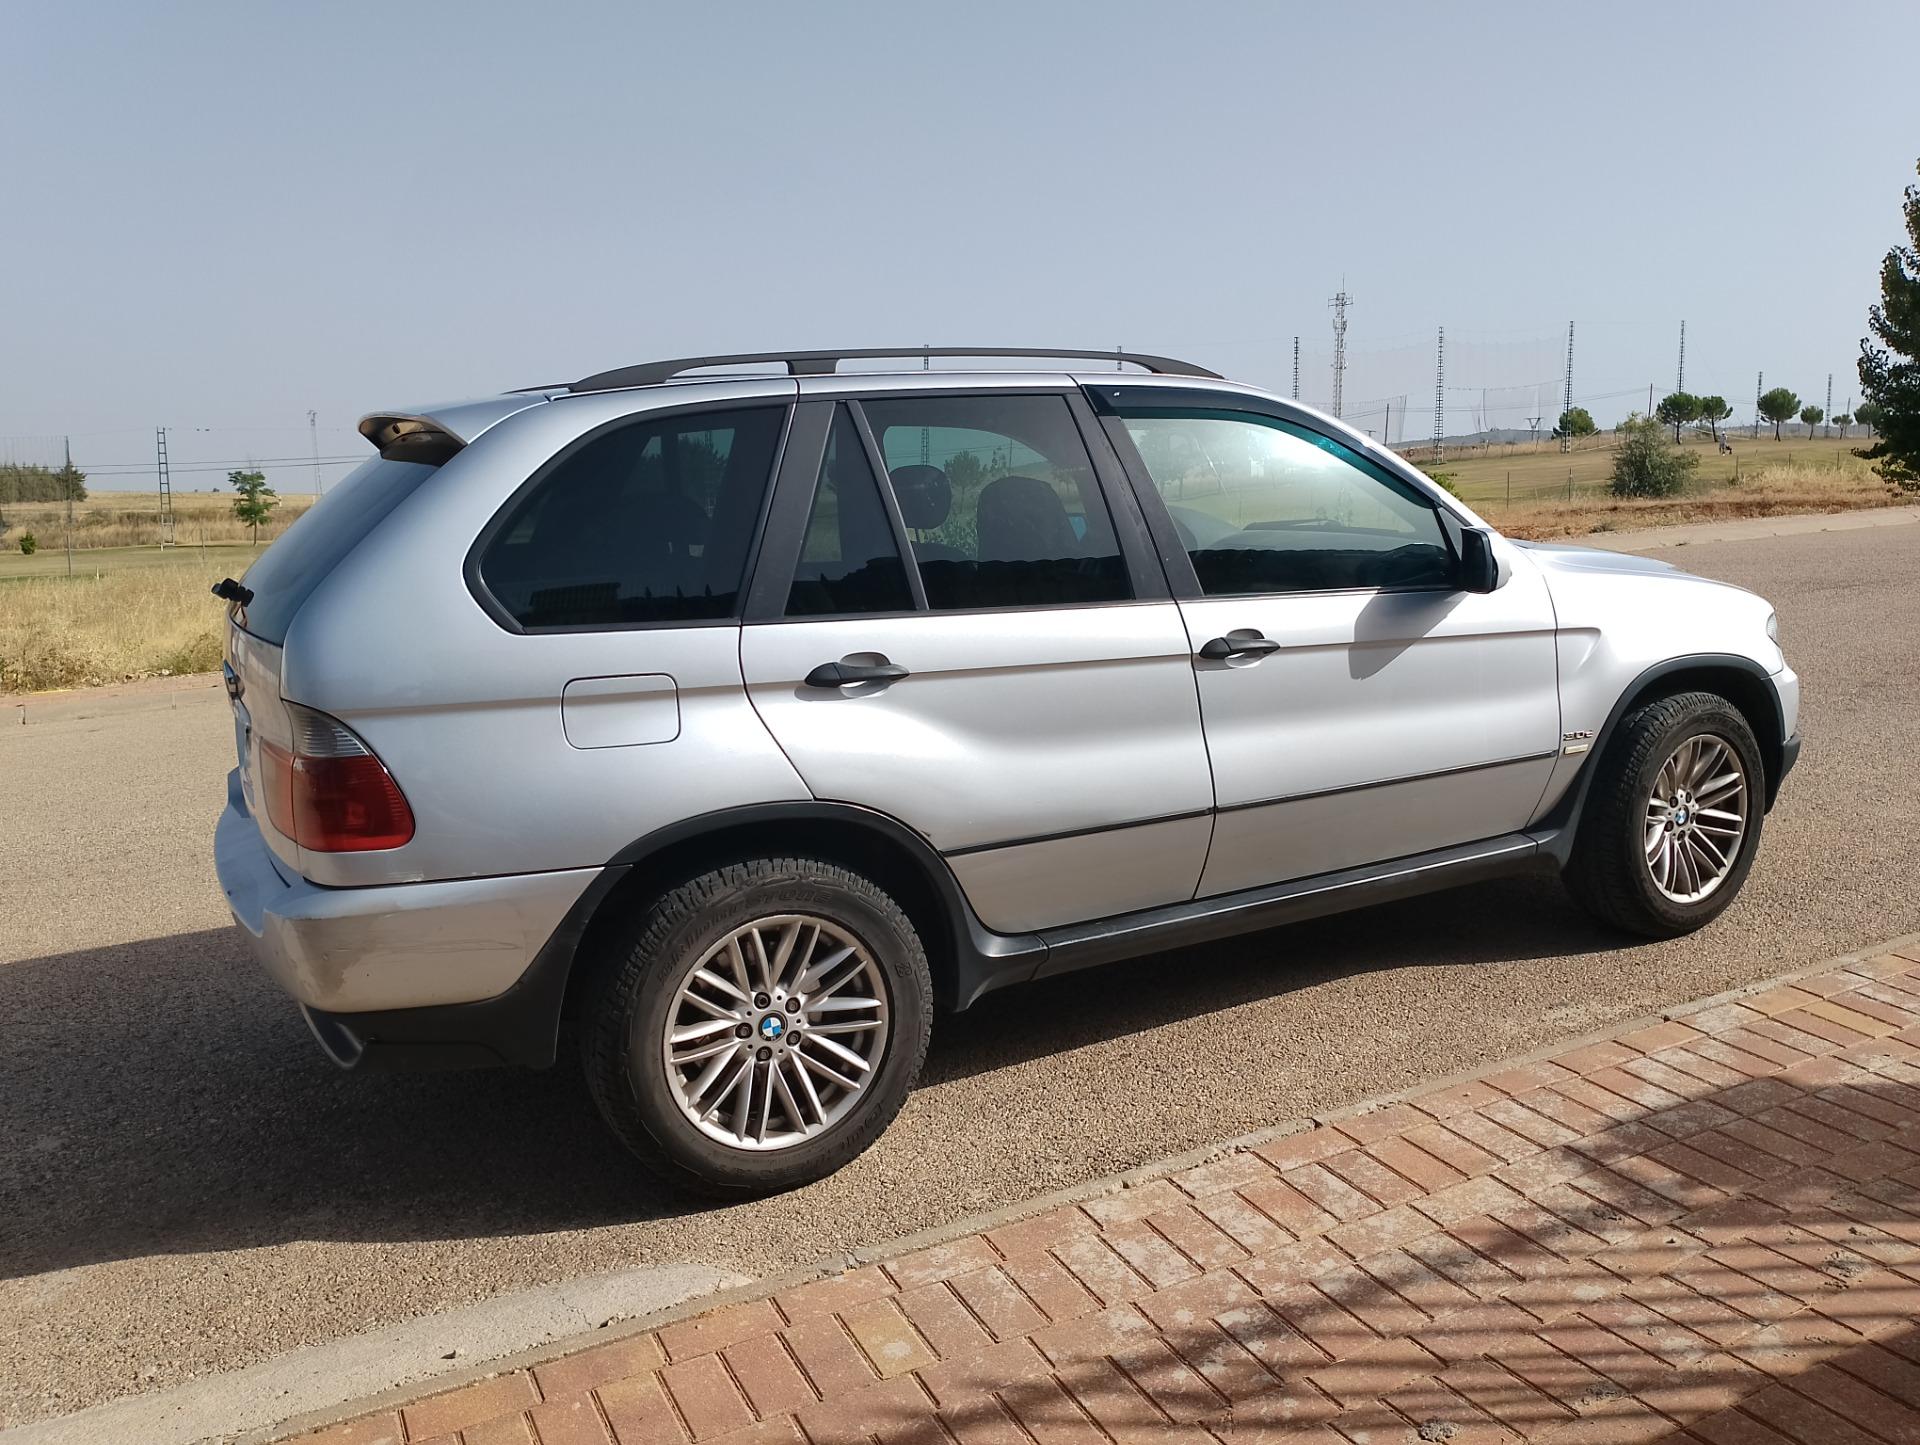 Foto 1 de BMW X5 vendo o cambio x mini,Audi Q7 7 plazas o furgoneta tipo vito